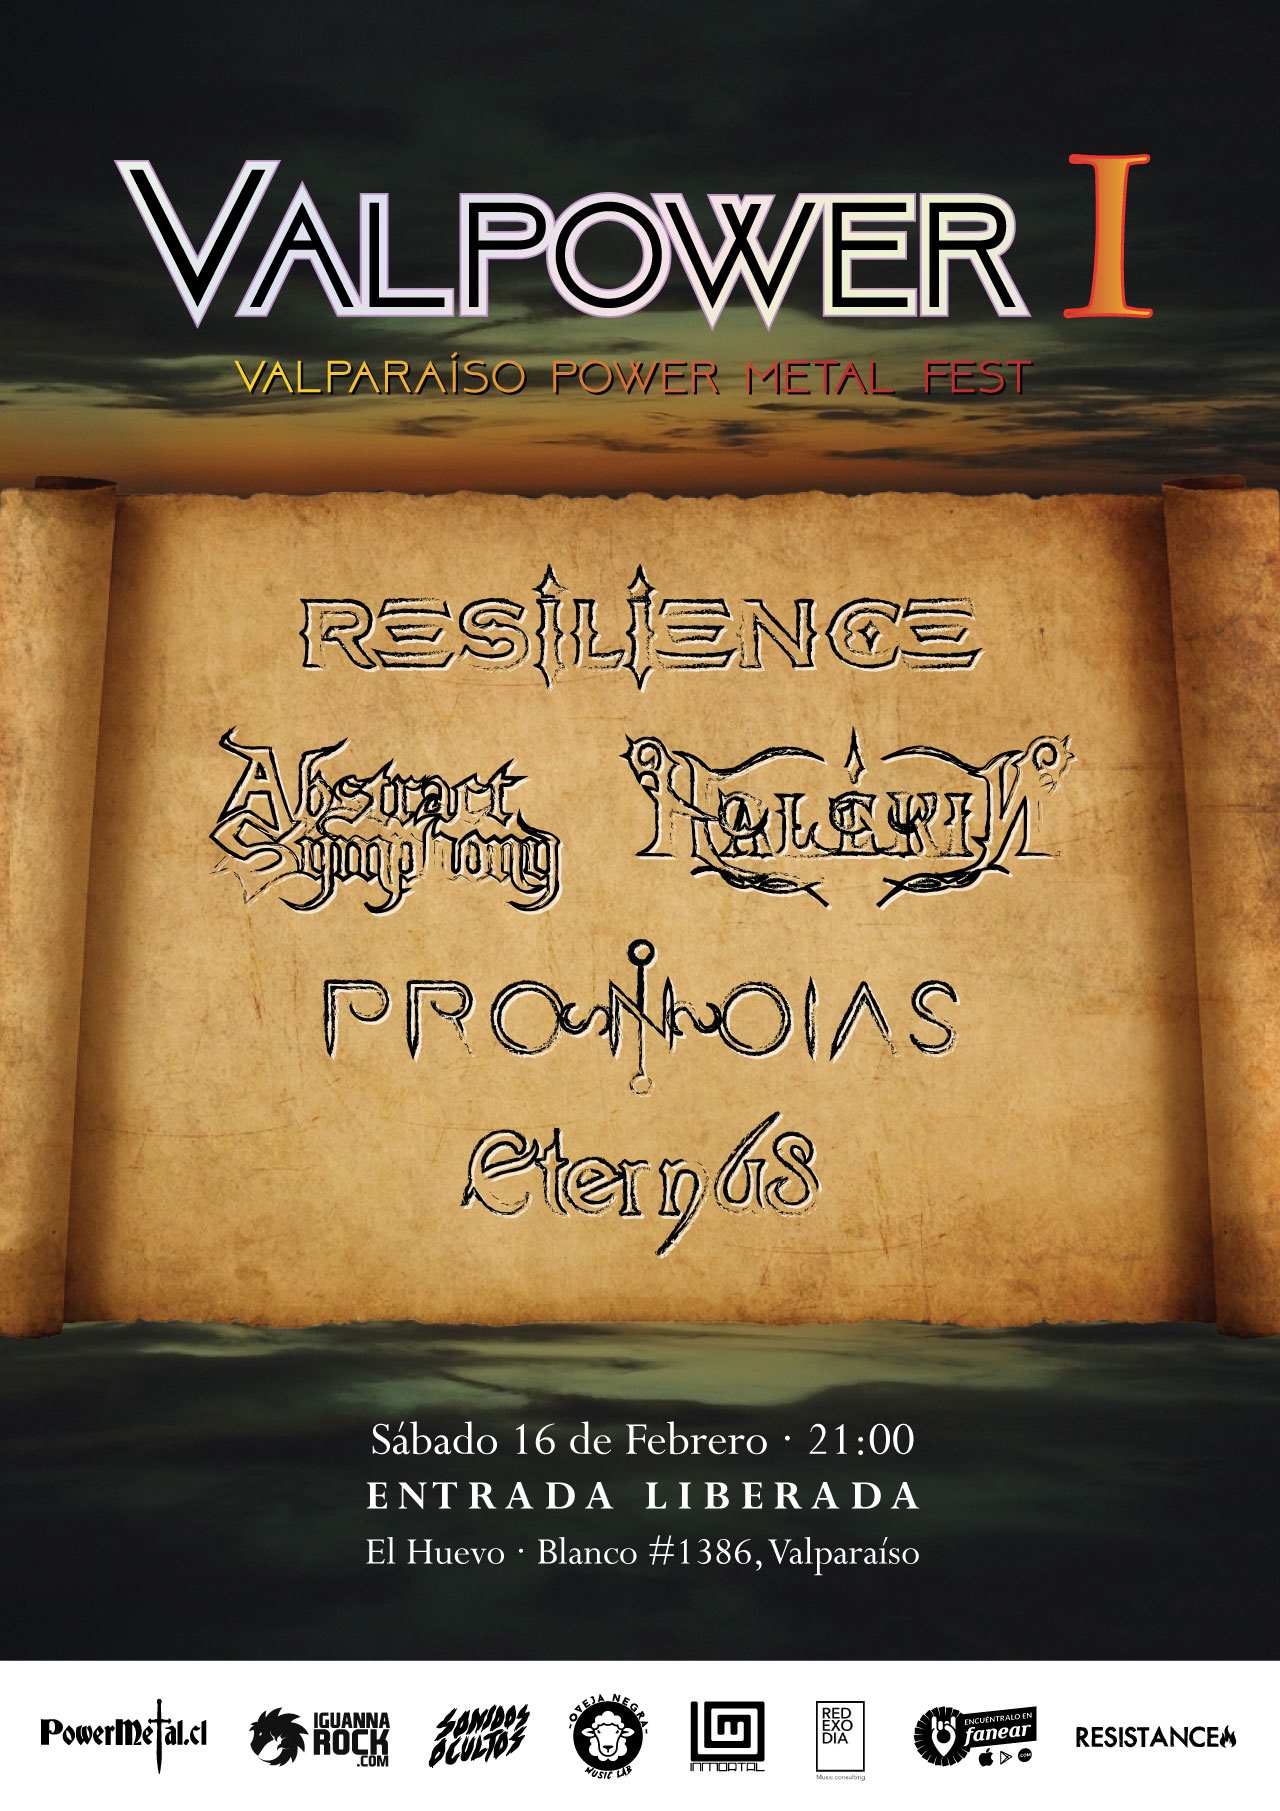 16 de Febrero: Valpower - Abstract Symphony, Pronoias, Halekin, Resilience y Eternus en Valparaíso